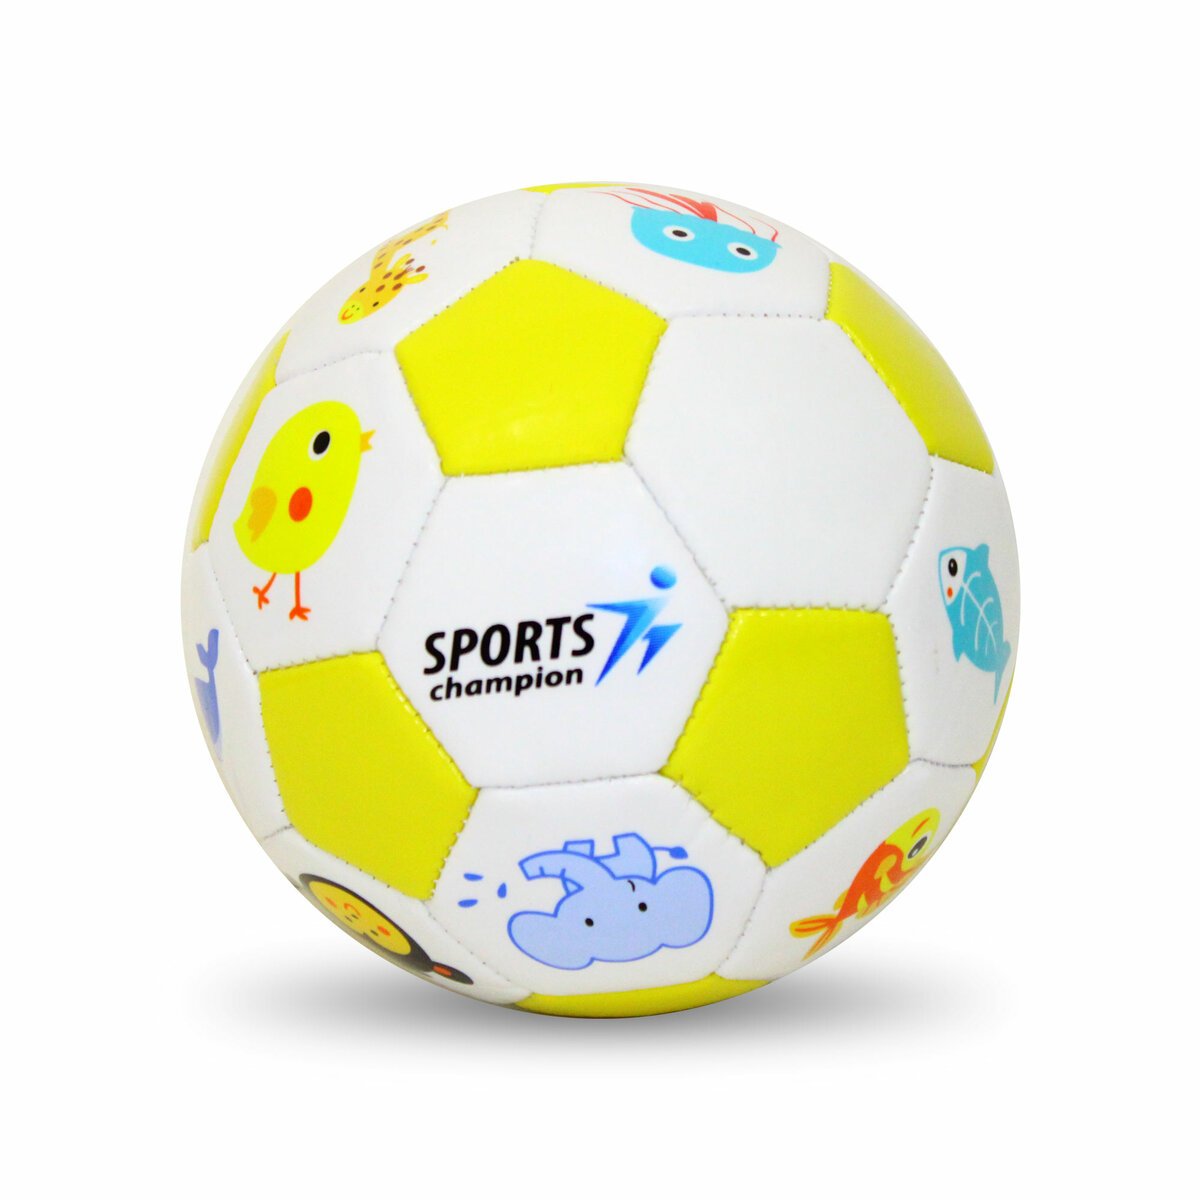 سبورتس شامبيون كرة قدم TB011 بالوان وتصاميم متعددة